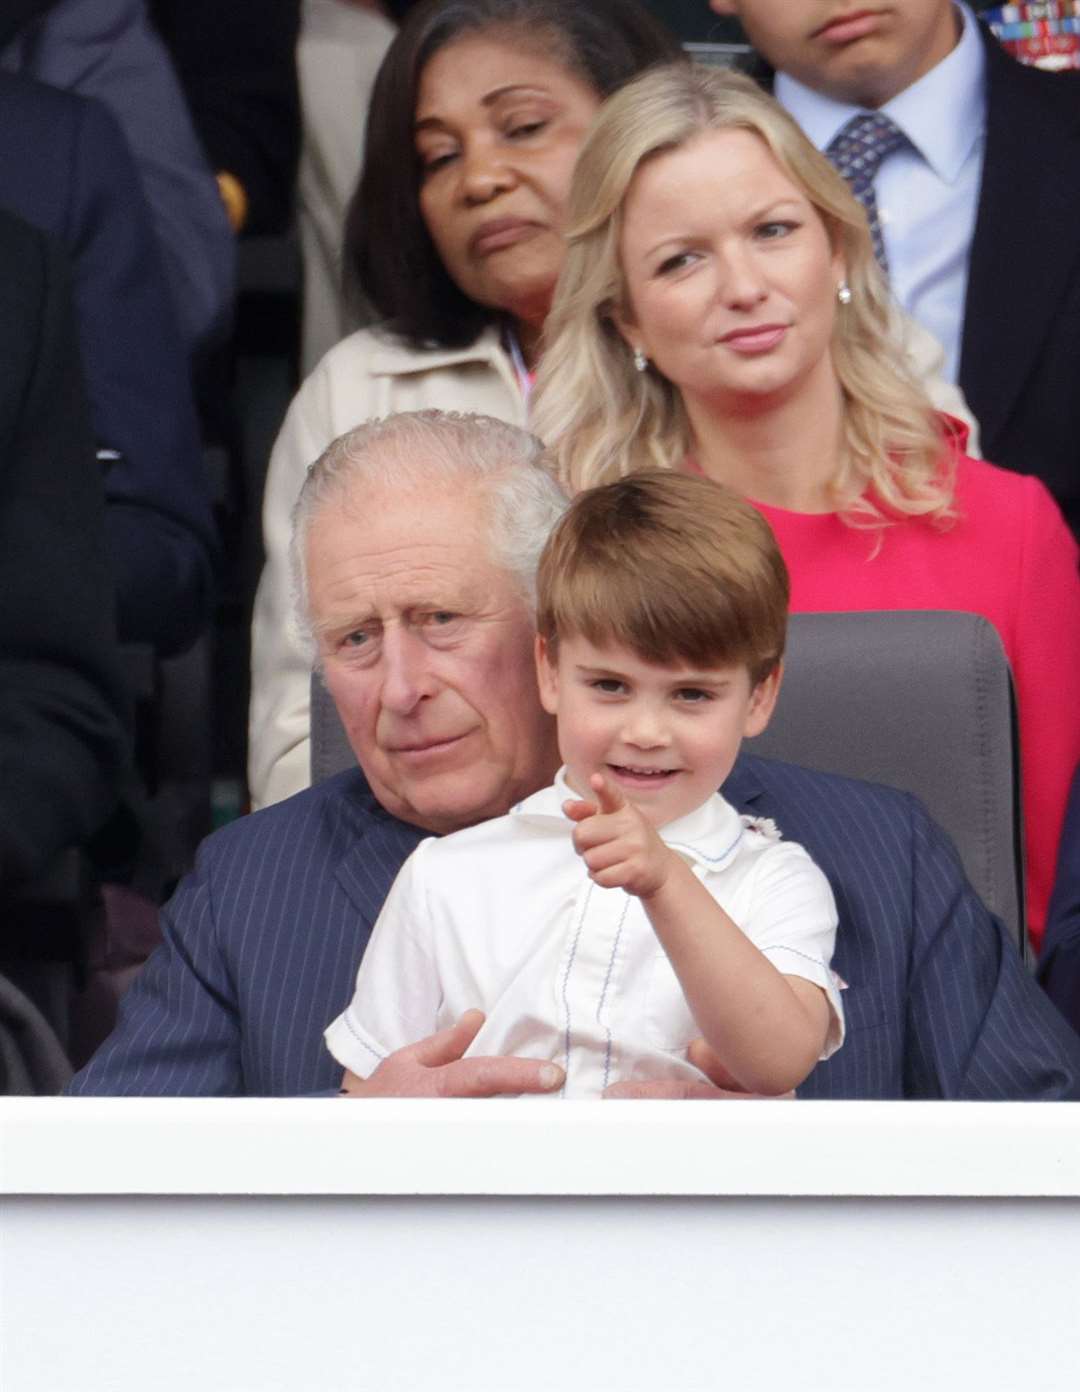 Prince Louis sits on his grandpa’s lap (Chris Jackson/PA)